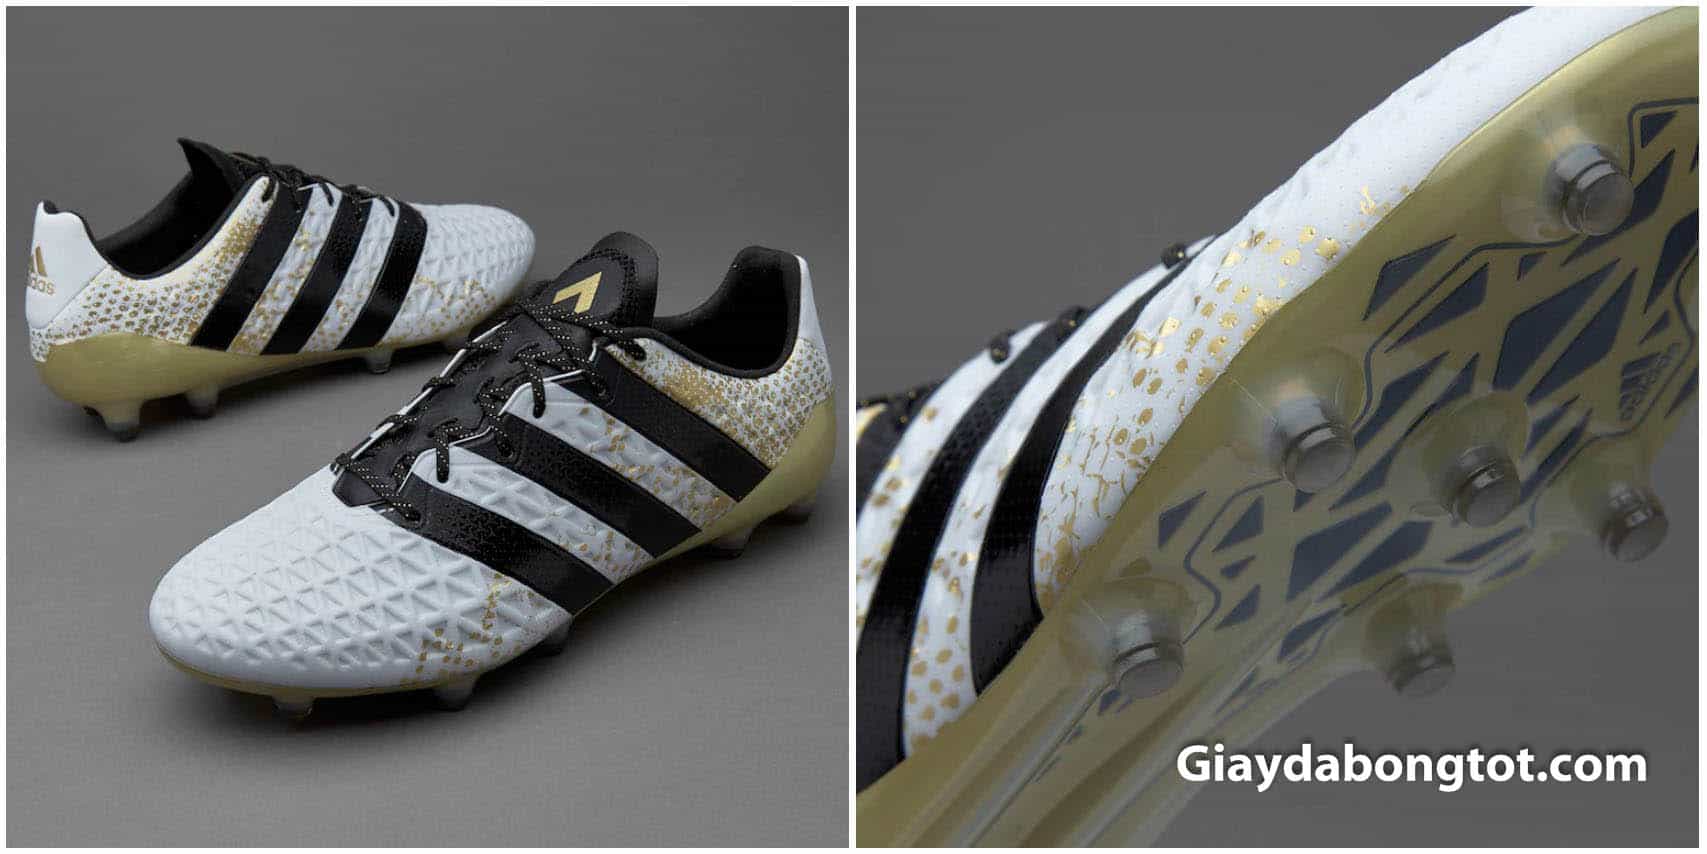 Giày bóng đá Adidas ACE 16.1 FG màu trắng được Anh Đức sử dụng tại King's Cup 2019